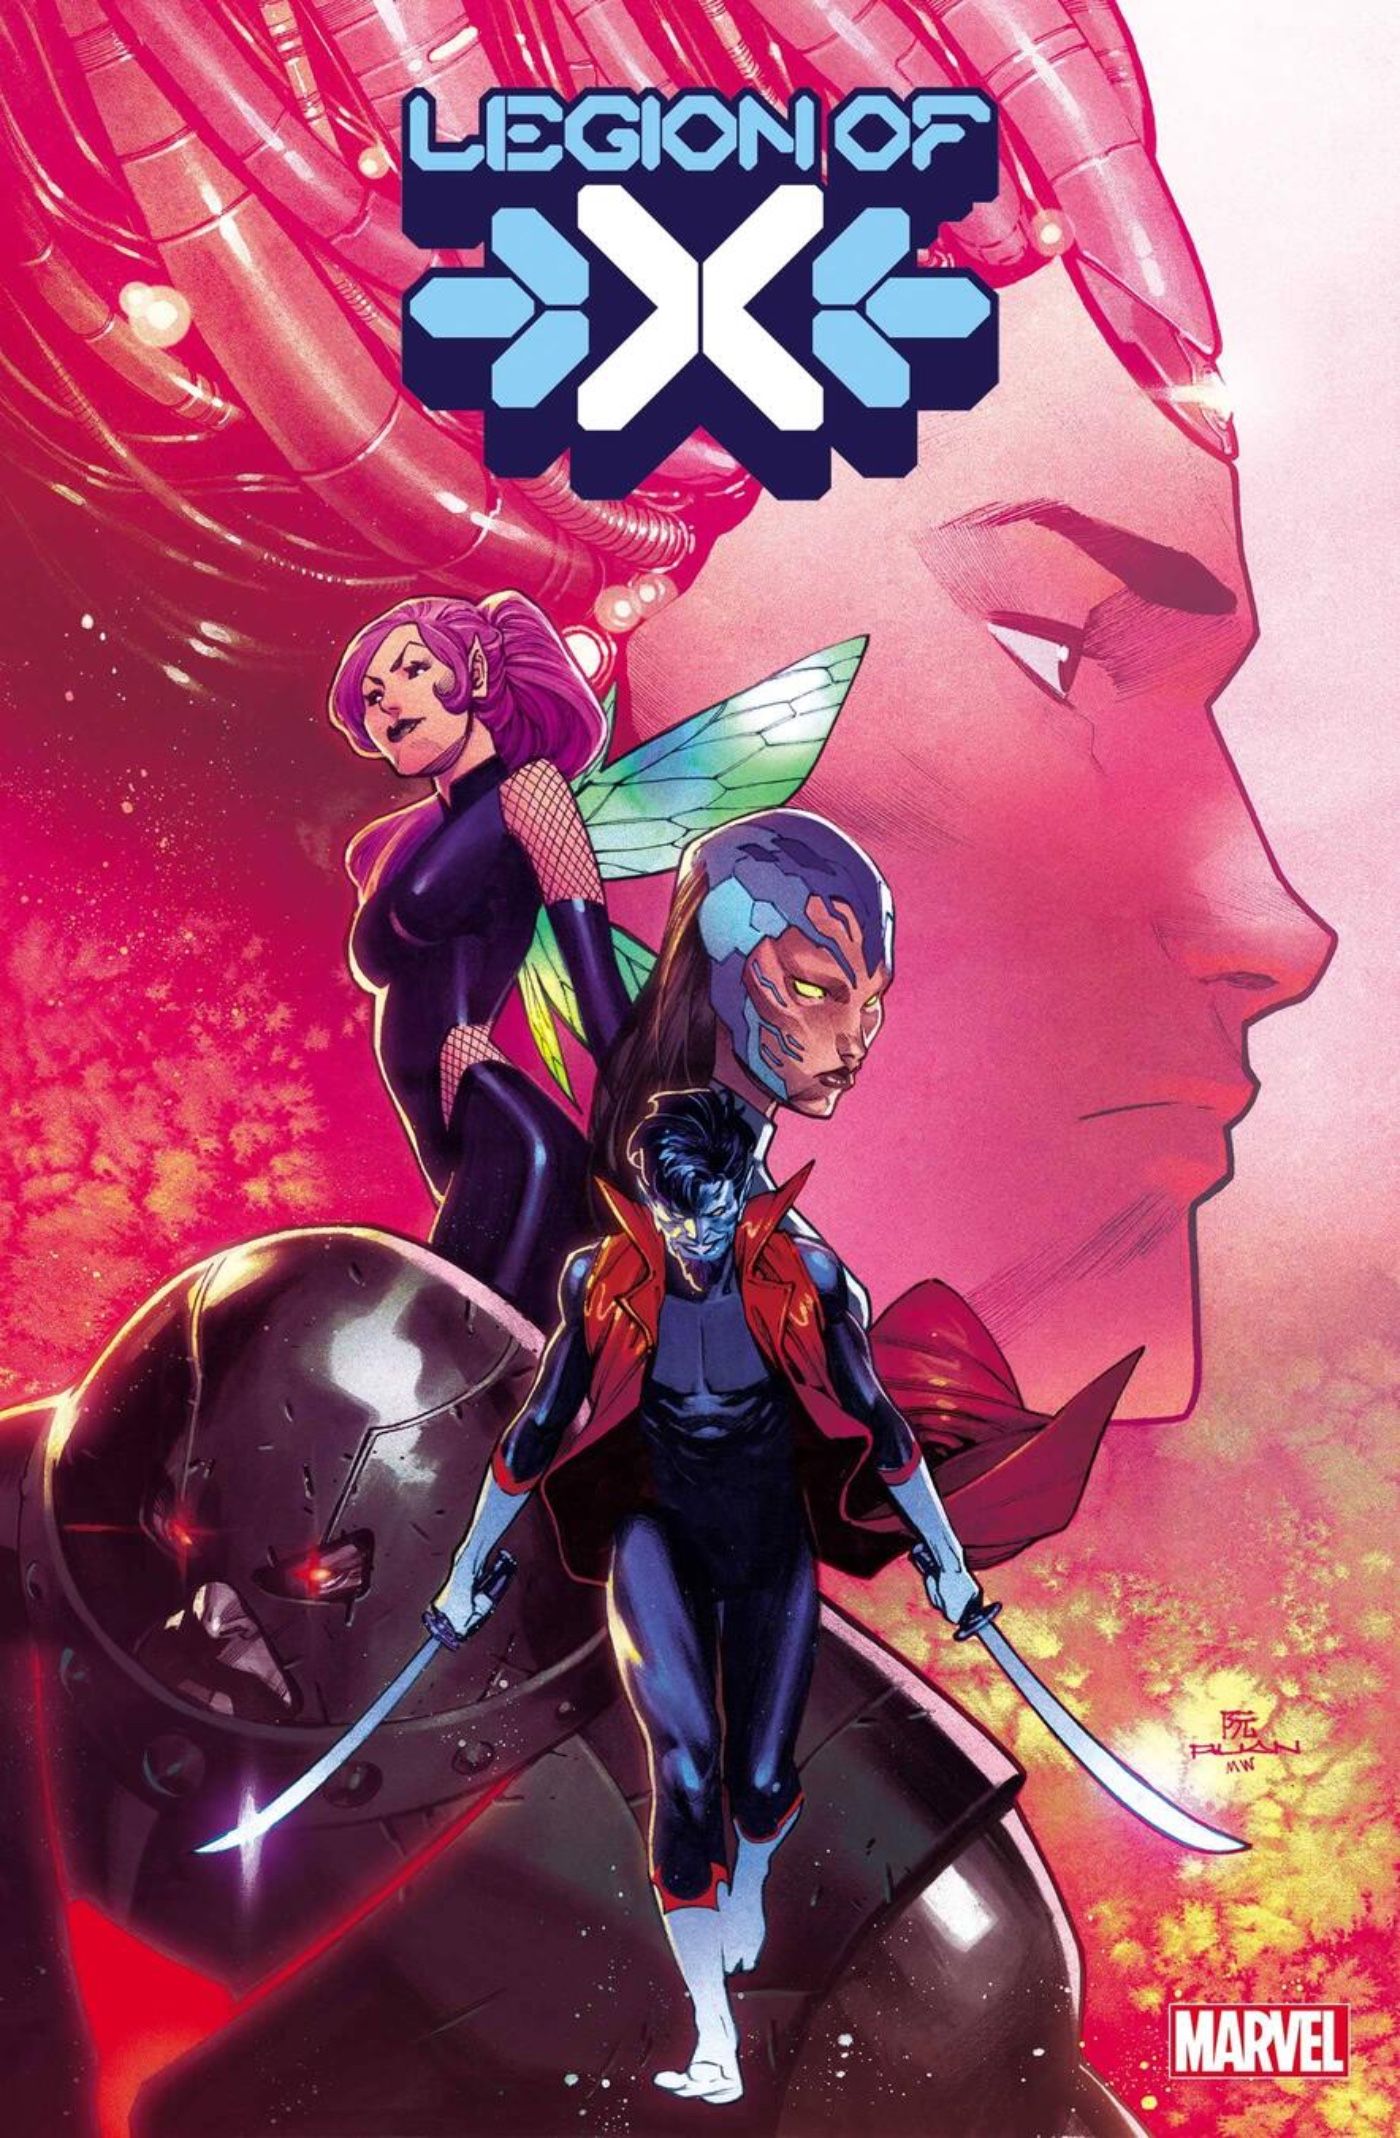 Nightcrawler’s New X-Men Team Pursues Mutant Justice in Legion of X